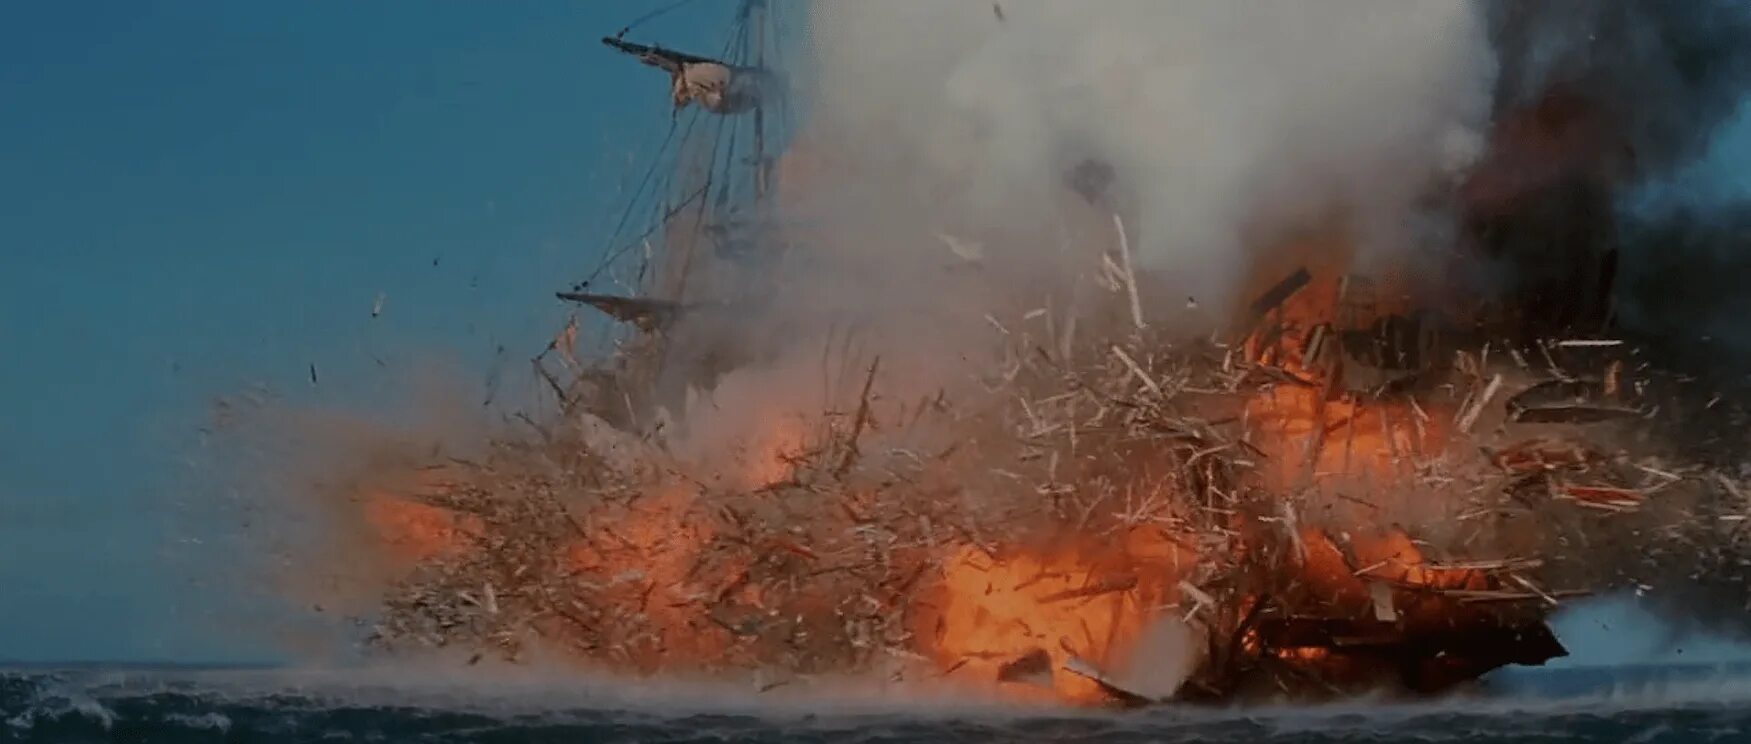 Взрыв отрывок. Взрыв корабля. Взрыв корабля в море. Взрыв корабля арт. Корабль взорвался.